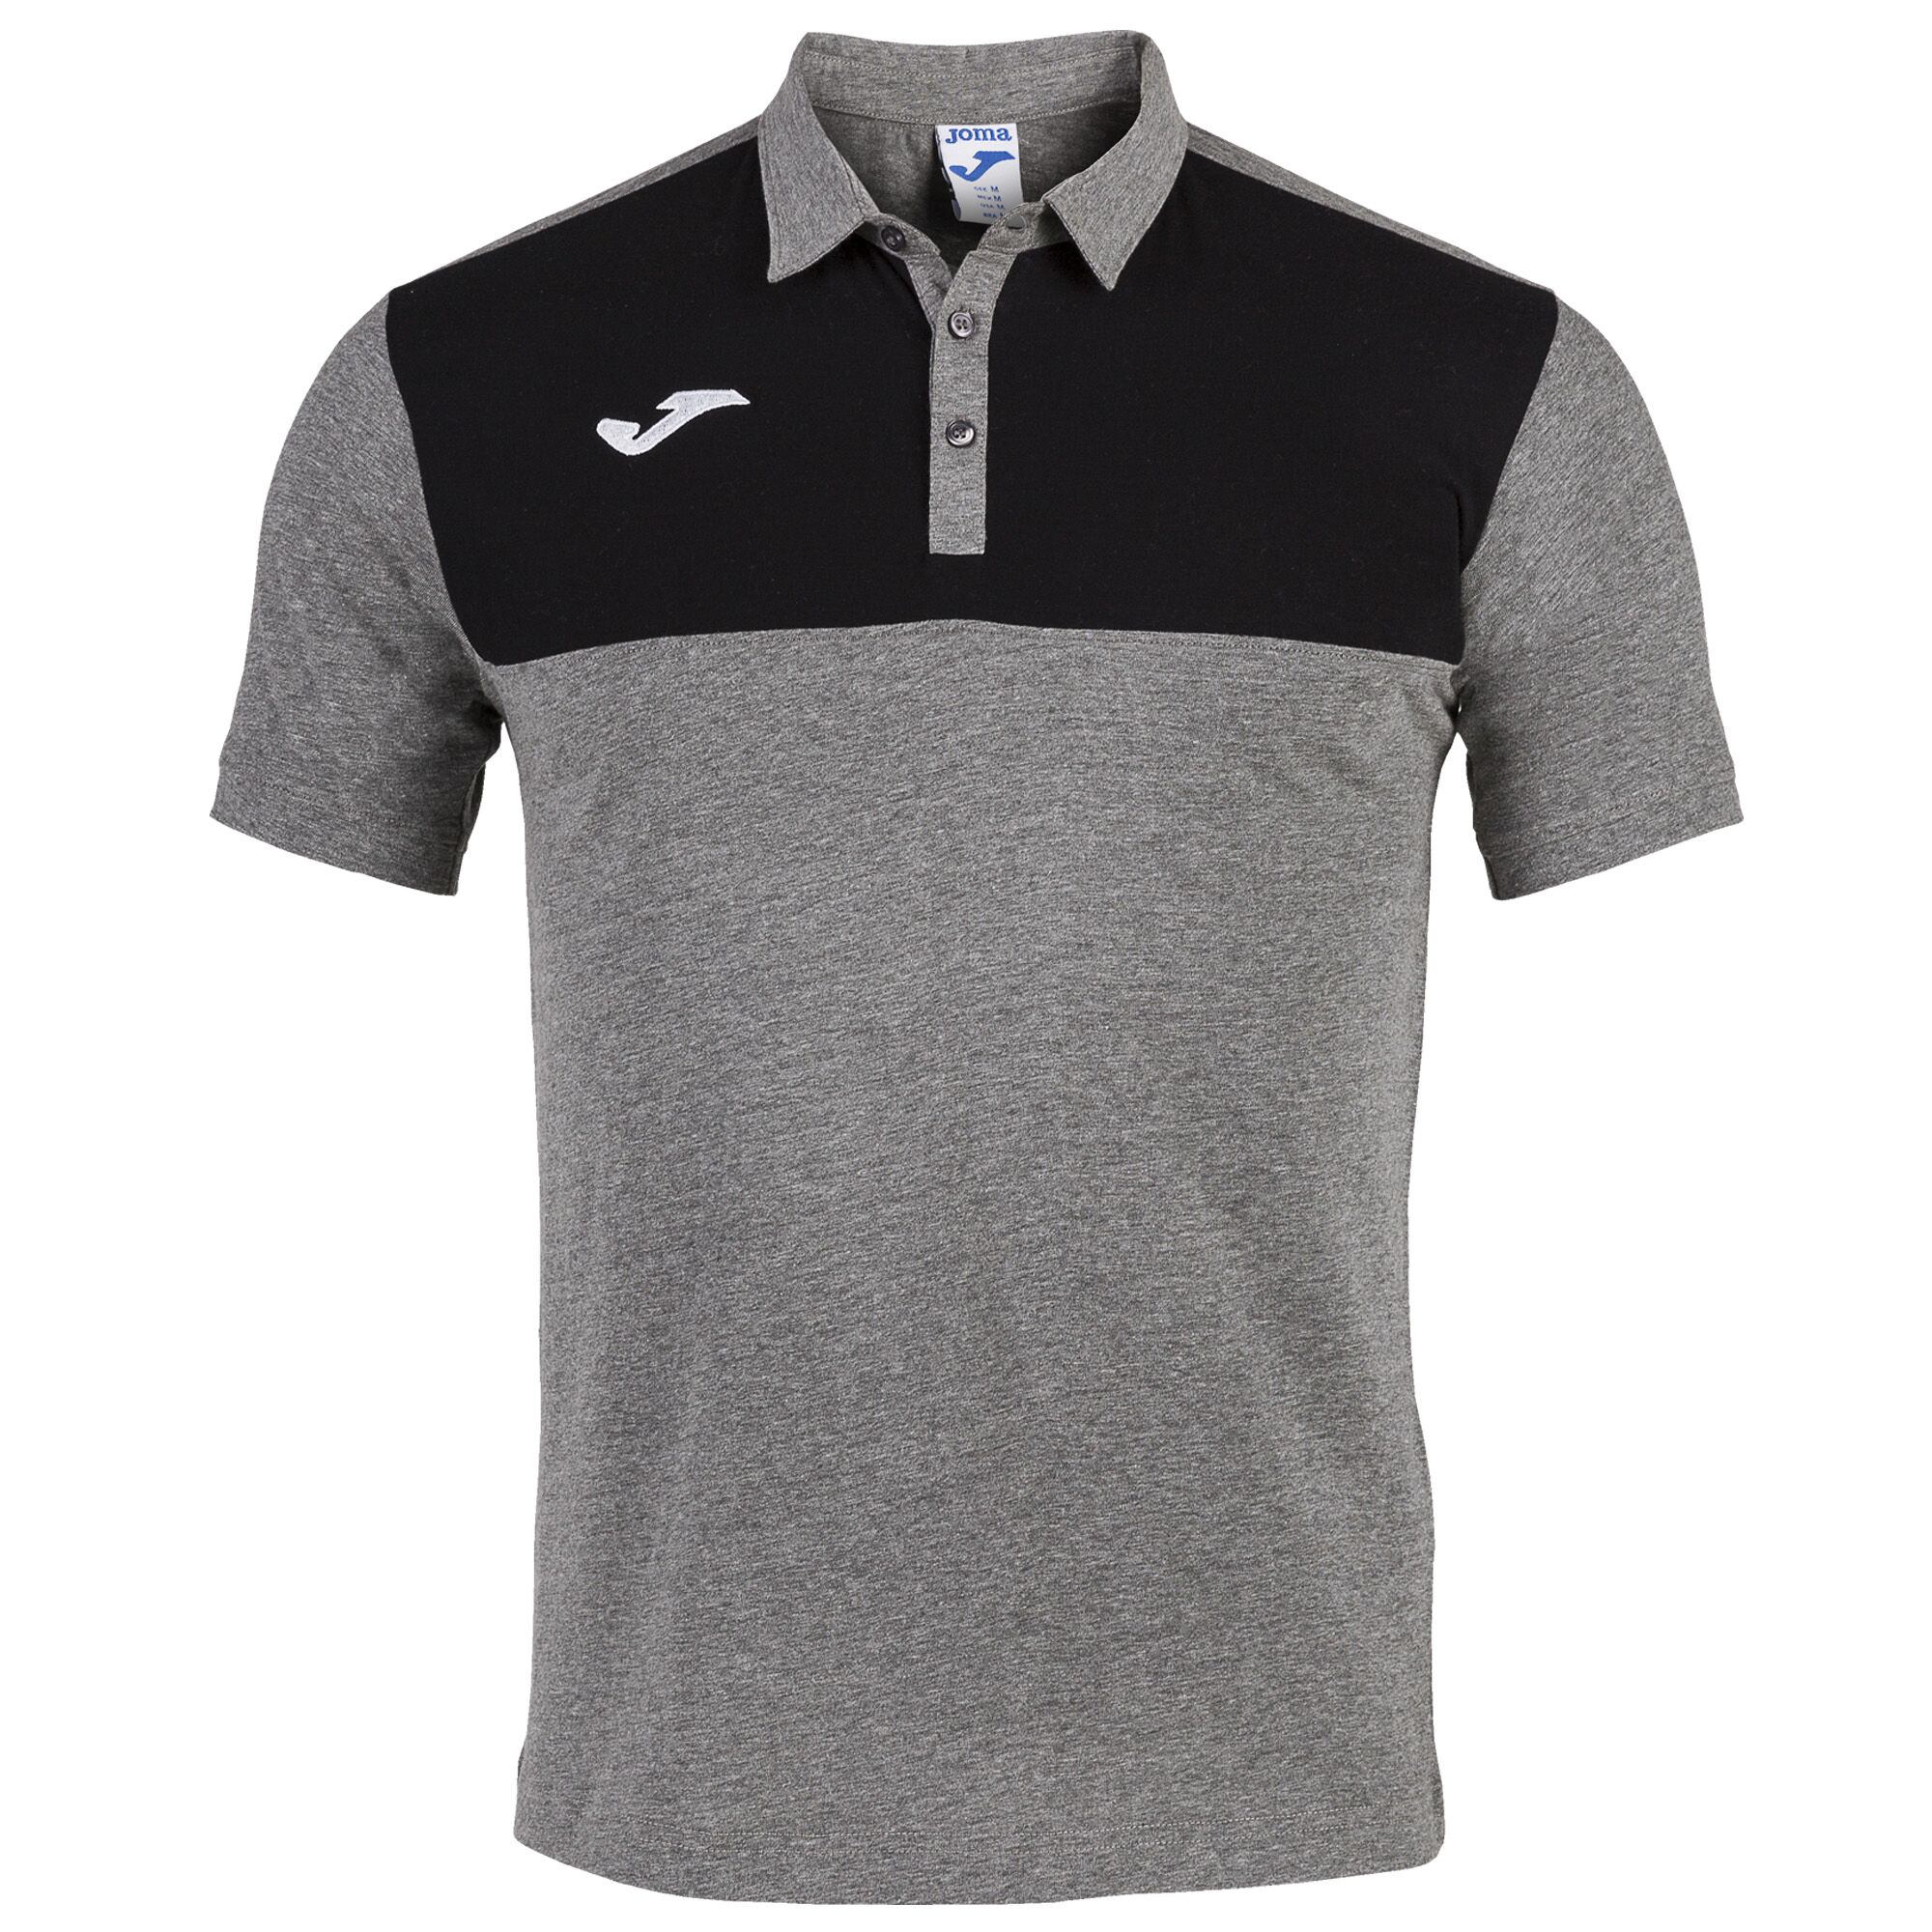 Polo shirt short-sleeve man Winner melange gray black